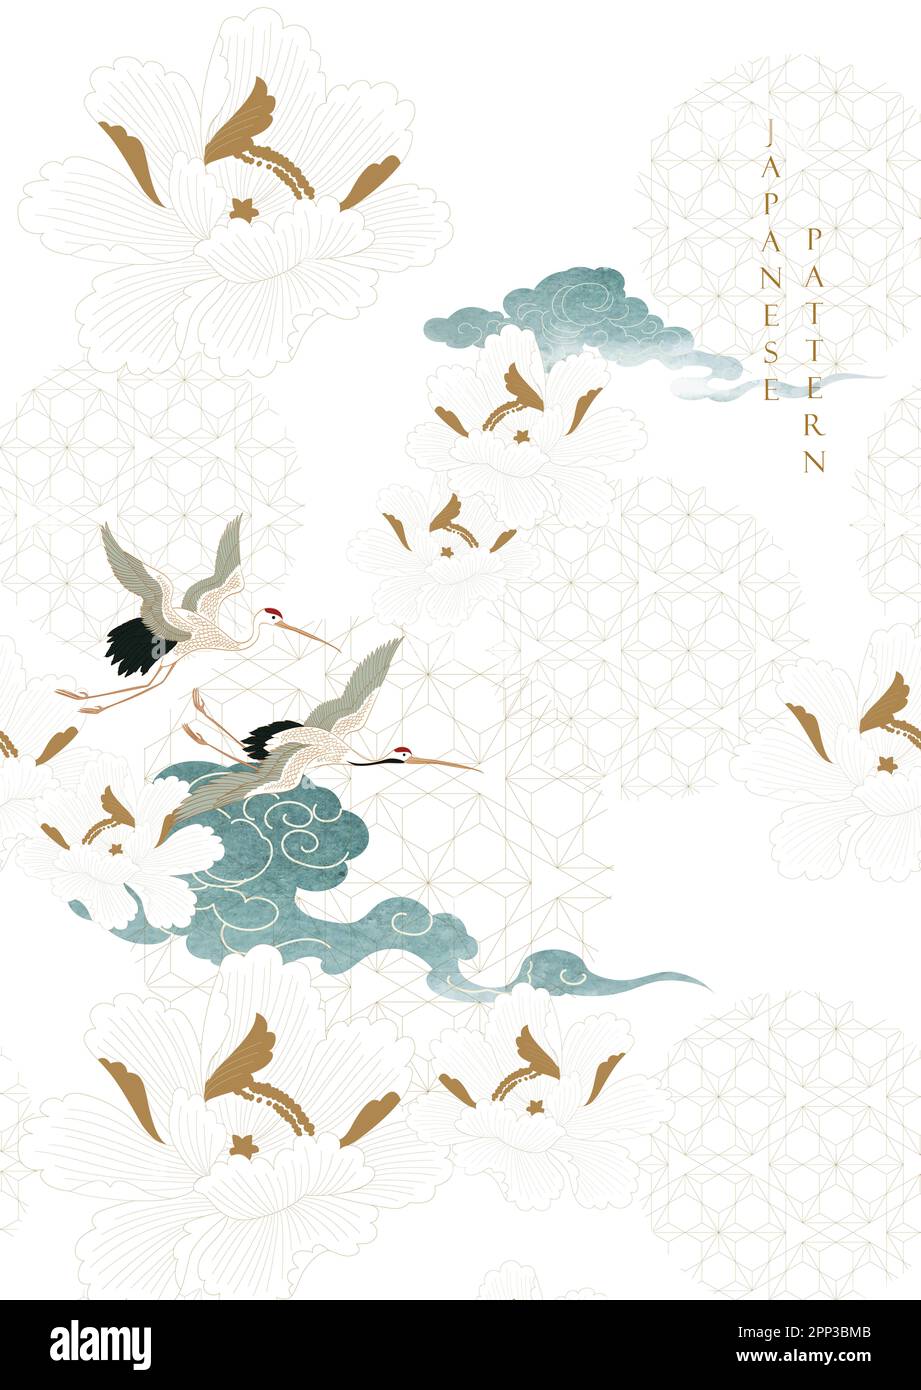 Élément d'oiseaux de grue. Décorations de nuages chinois avec texture bleu aquarelle dans un style vintage. Paysage d'art abstrait avec motif de fleur de pivoine et lea Banque D'Images